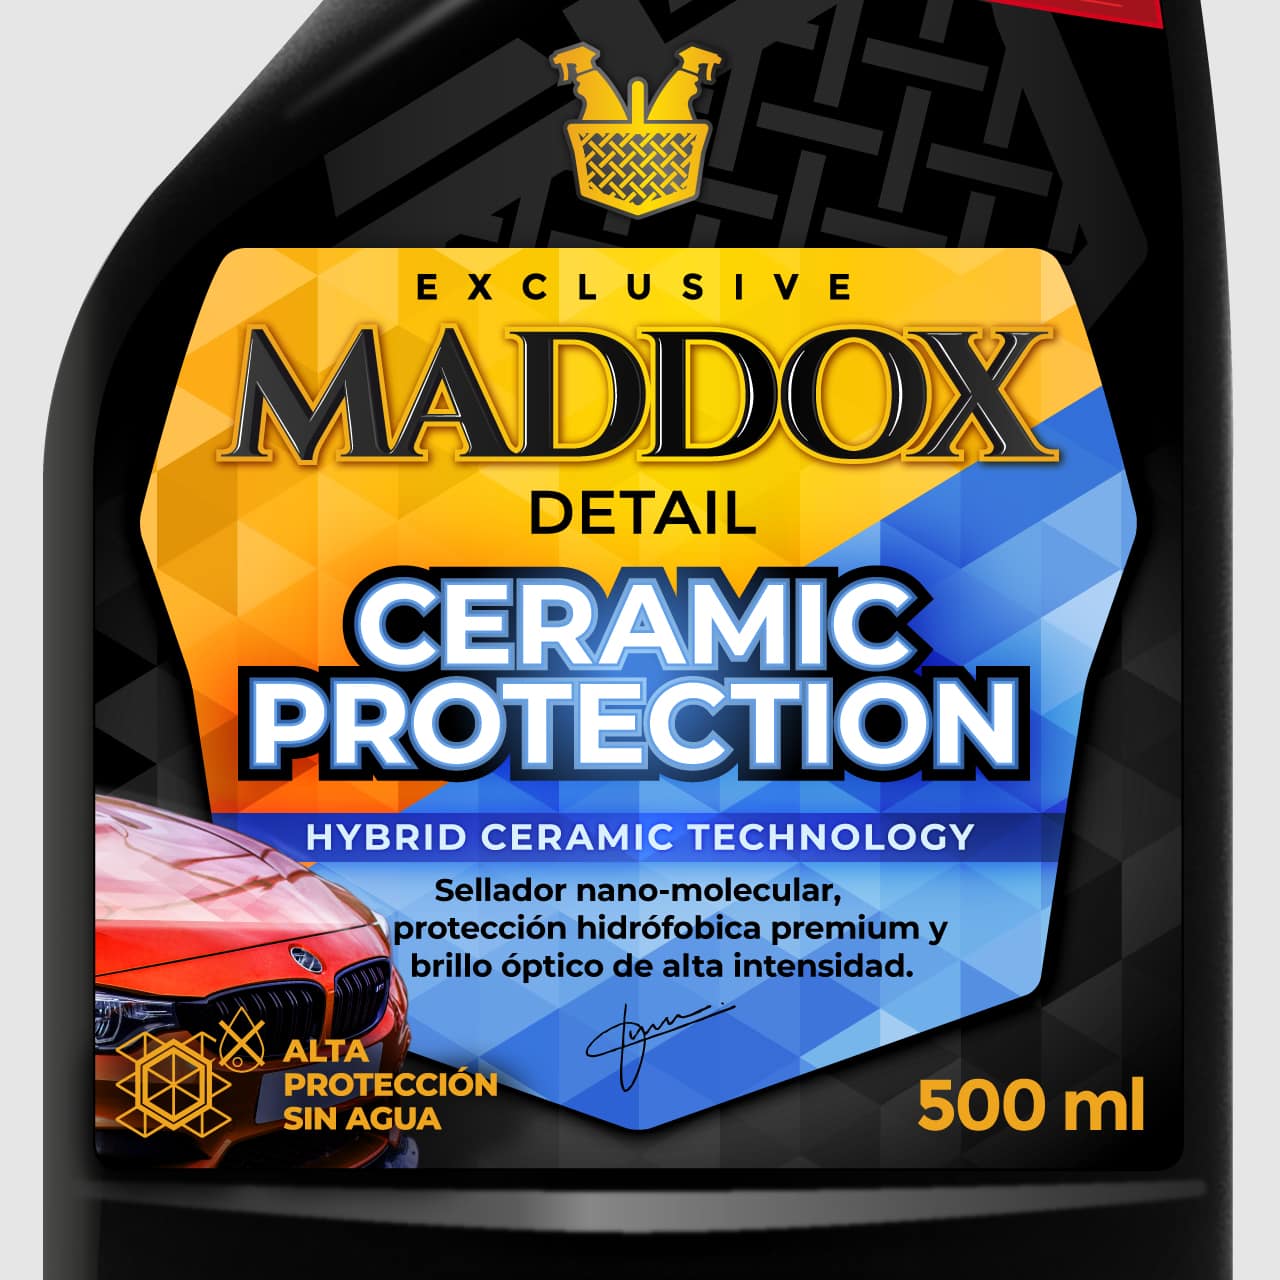 Abrillantador Coche - Maddox Premium Glaze Wax